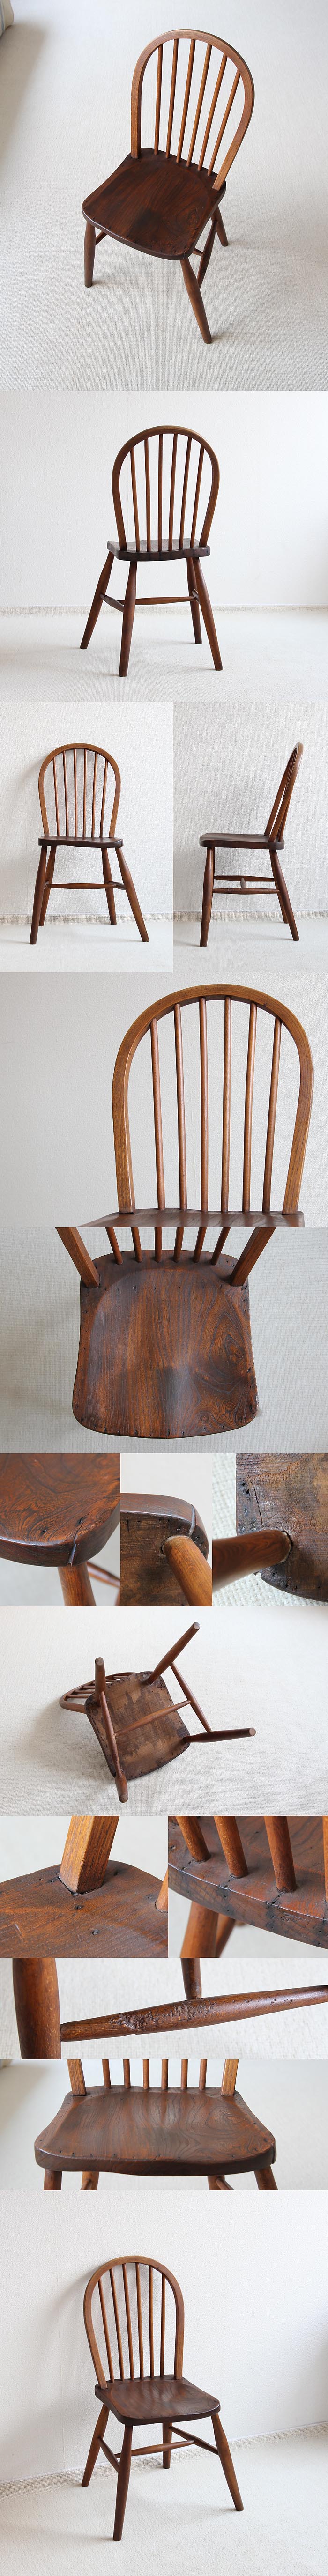 イギリス アンティーク キッチンチェア 英国 木製椅子 家具「フープバックチェア」V-493